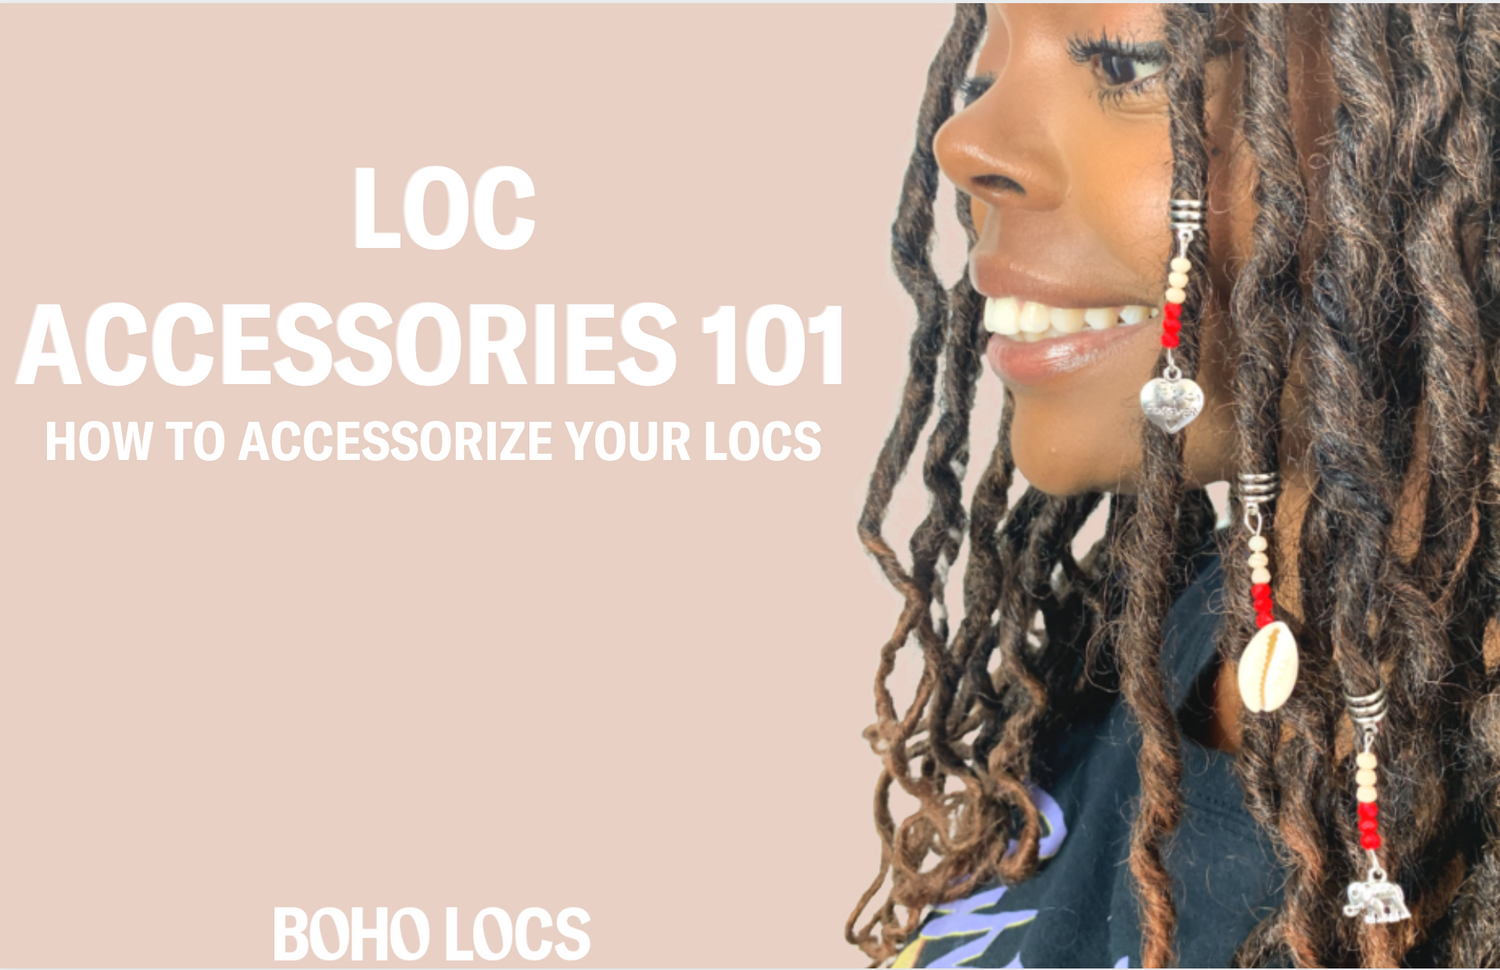 Loc Accessories 101 – Boho Locs